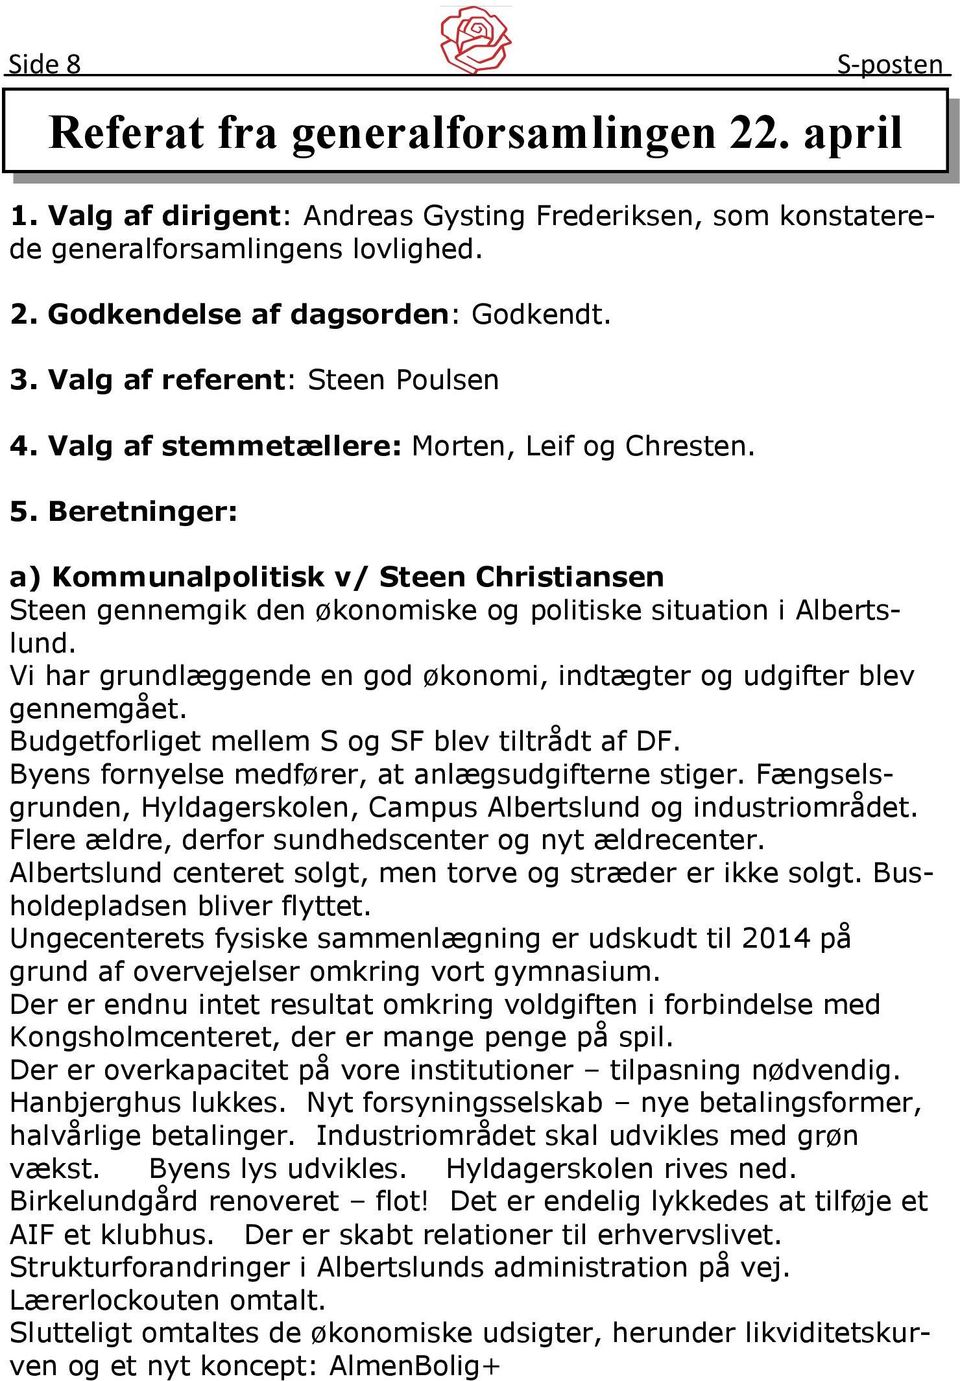 Beretninger: a) Kommunalpolitisk v/ Steen Christiansen Steen gennemgik den økonomiske og politiske situation i Albertslund. Vi har grundlæggende en god økonomi, indtægter og udgifter blev gennemgået.